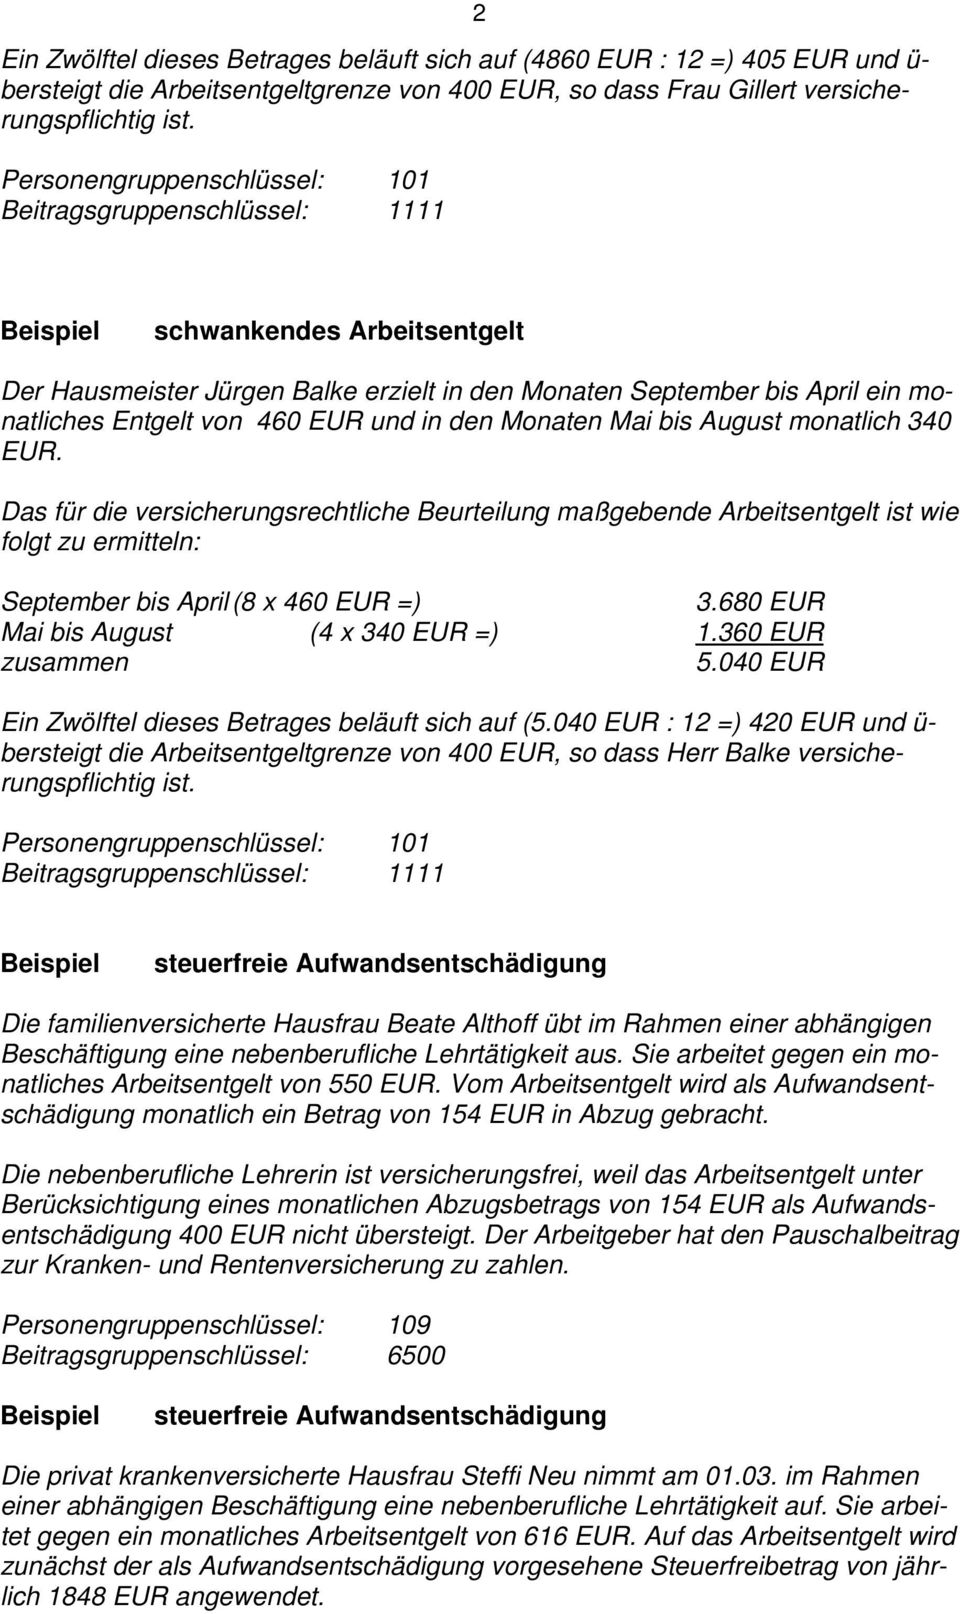 Das für die versicherungsrechtliche Beurteilung maßgebende Arbeitsentgelt ist wie folgt zu ermitteln: September bis April (8 x 460 EUR =) 3.680 EUR Mai bis August (4 x 340 EUR =) 1.360 EUR zusammen 5.